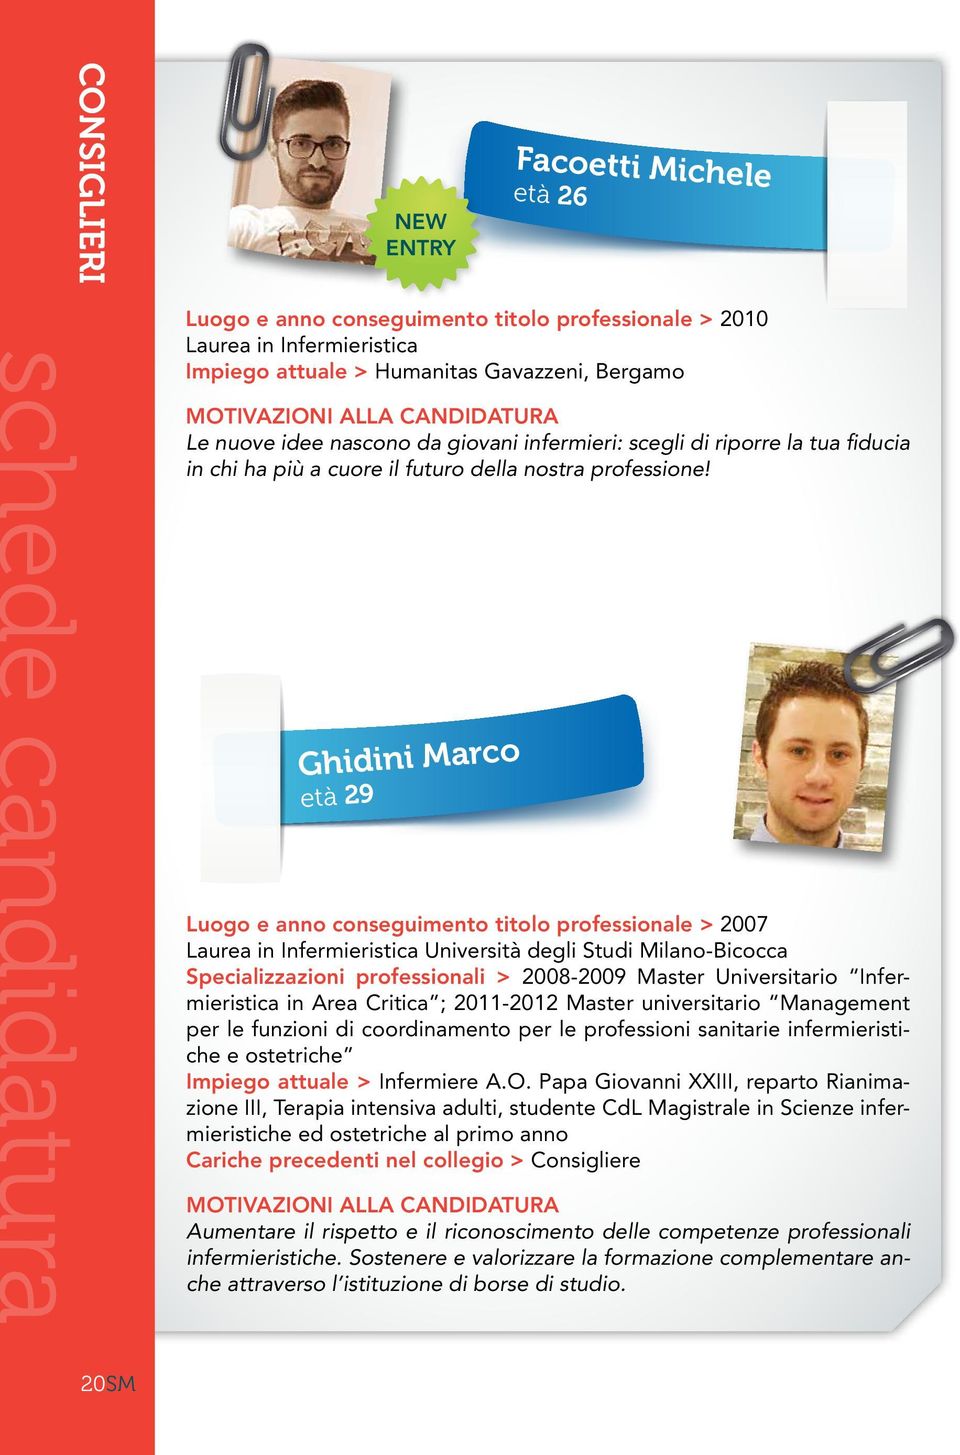 Ghidini Marco età 29 Luogo e anno conseguimento titolo professionale > 2007 Laurea in Infermieristica Università degli Studi Milano-Bicocca Specializzazioni professionali > 2008-2009 Master